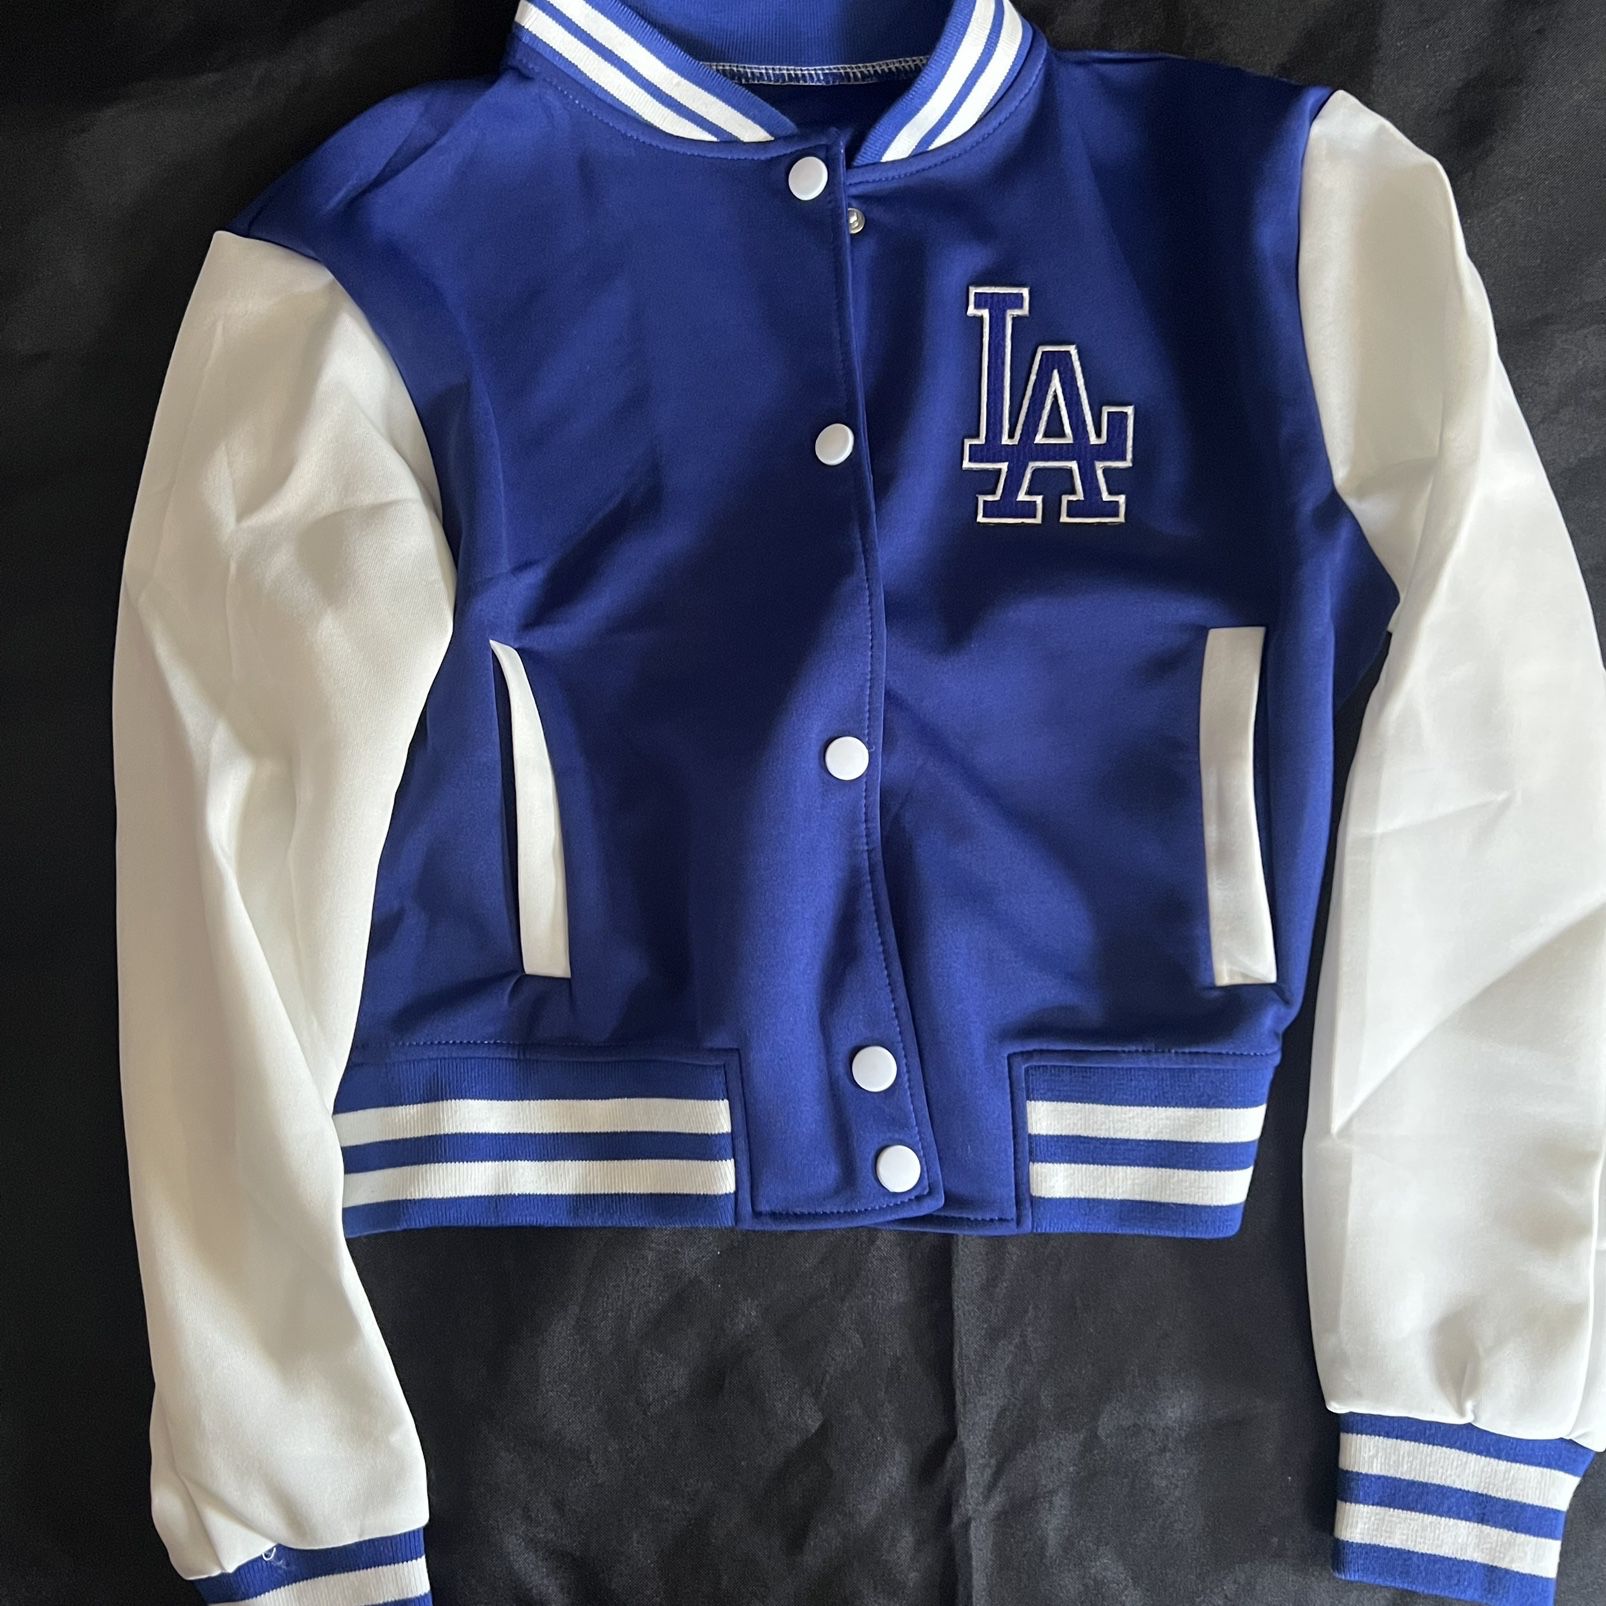 LA Dodgers Jacket for Sale in Long Beach, CA - OfferUp